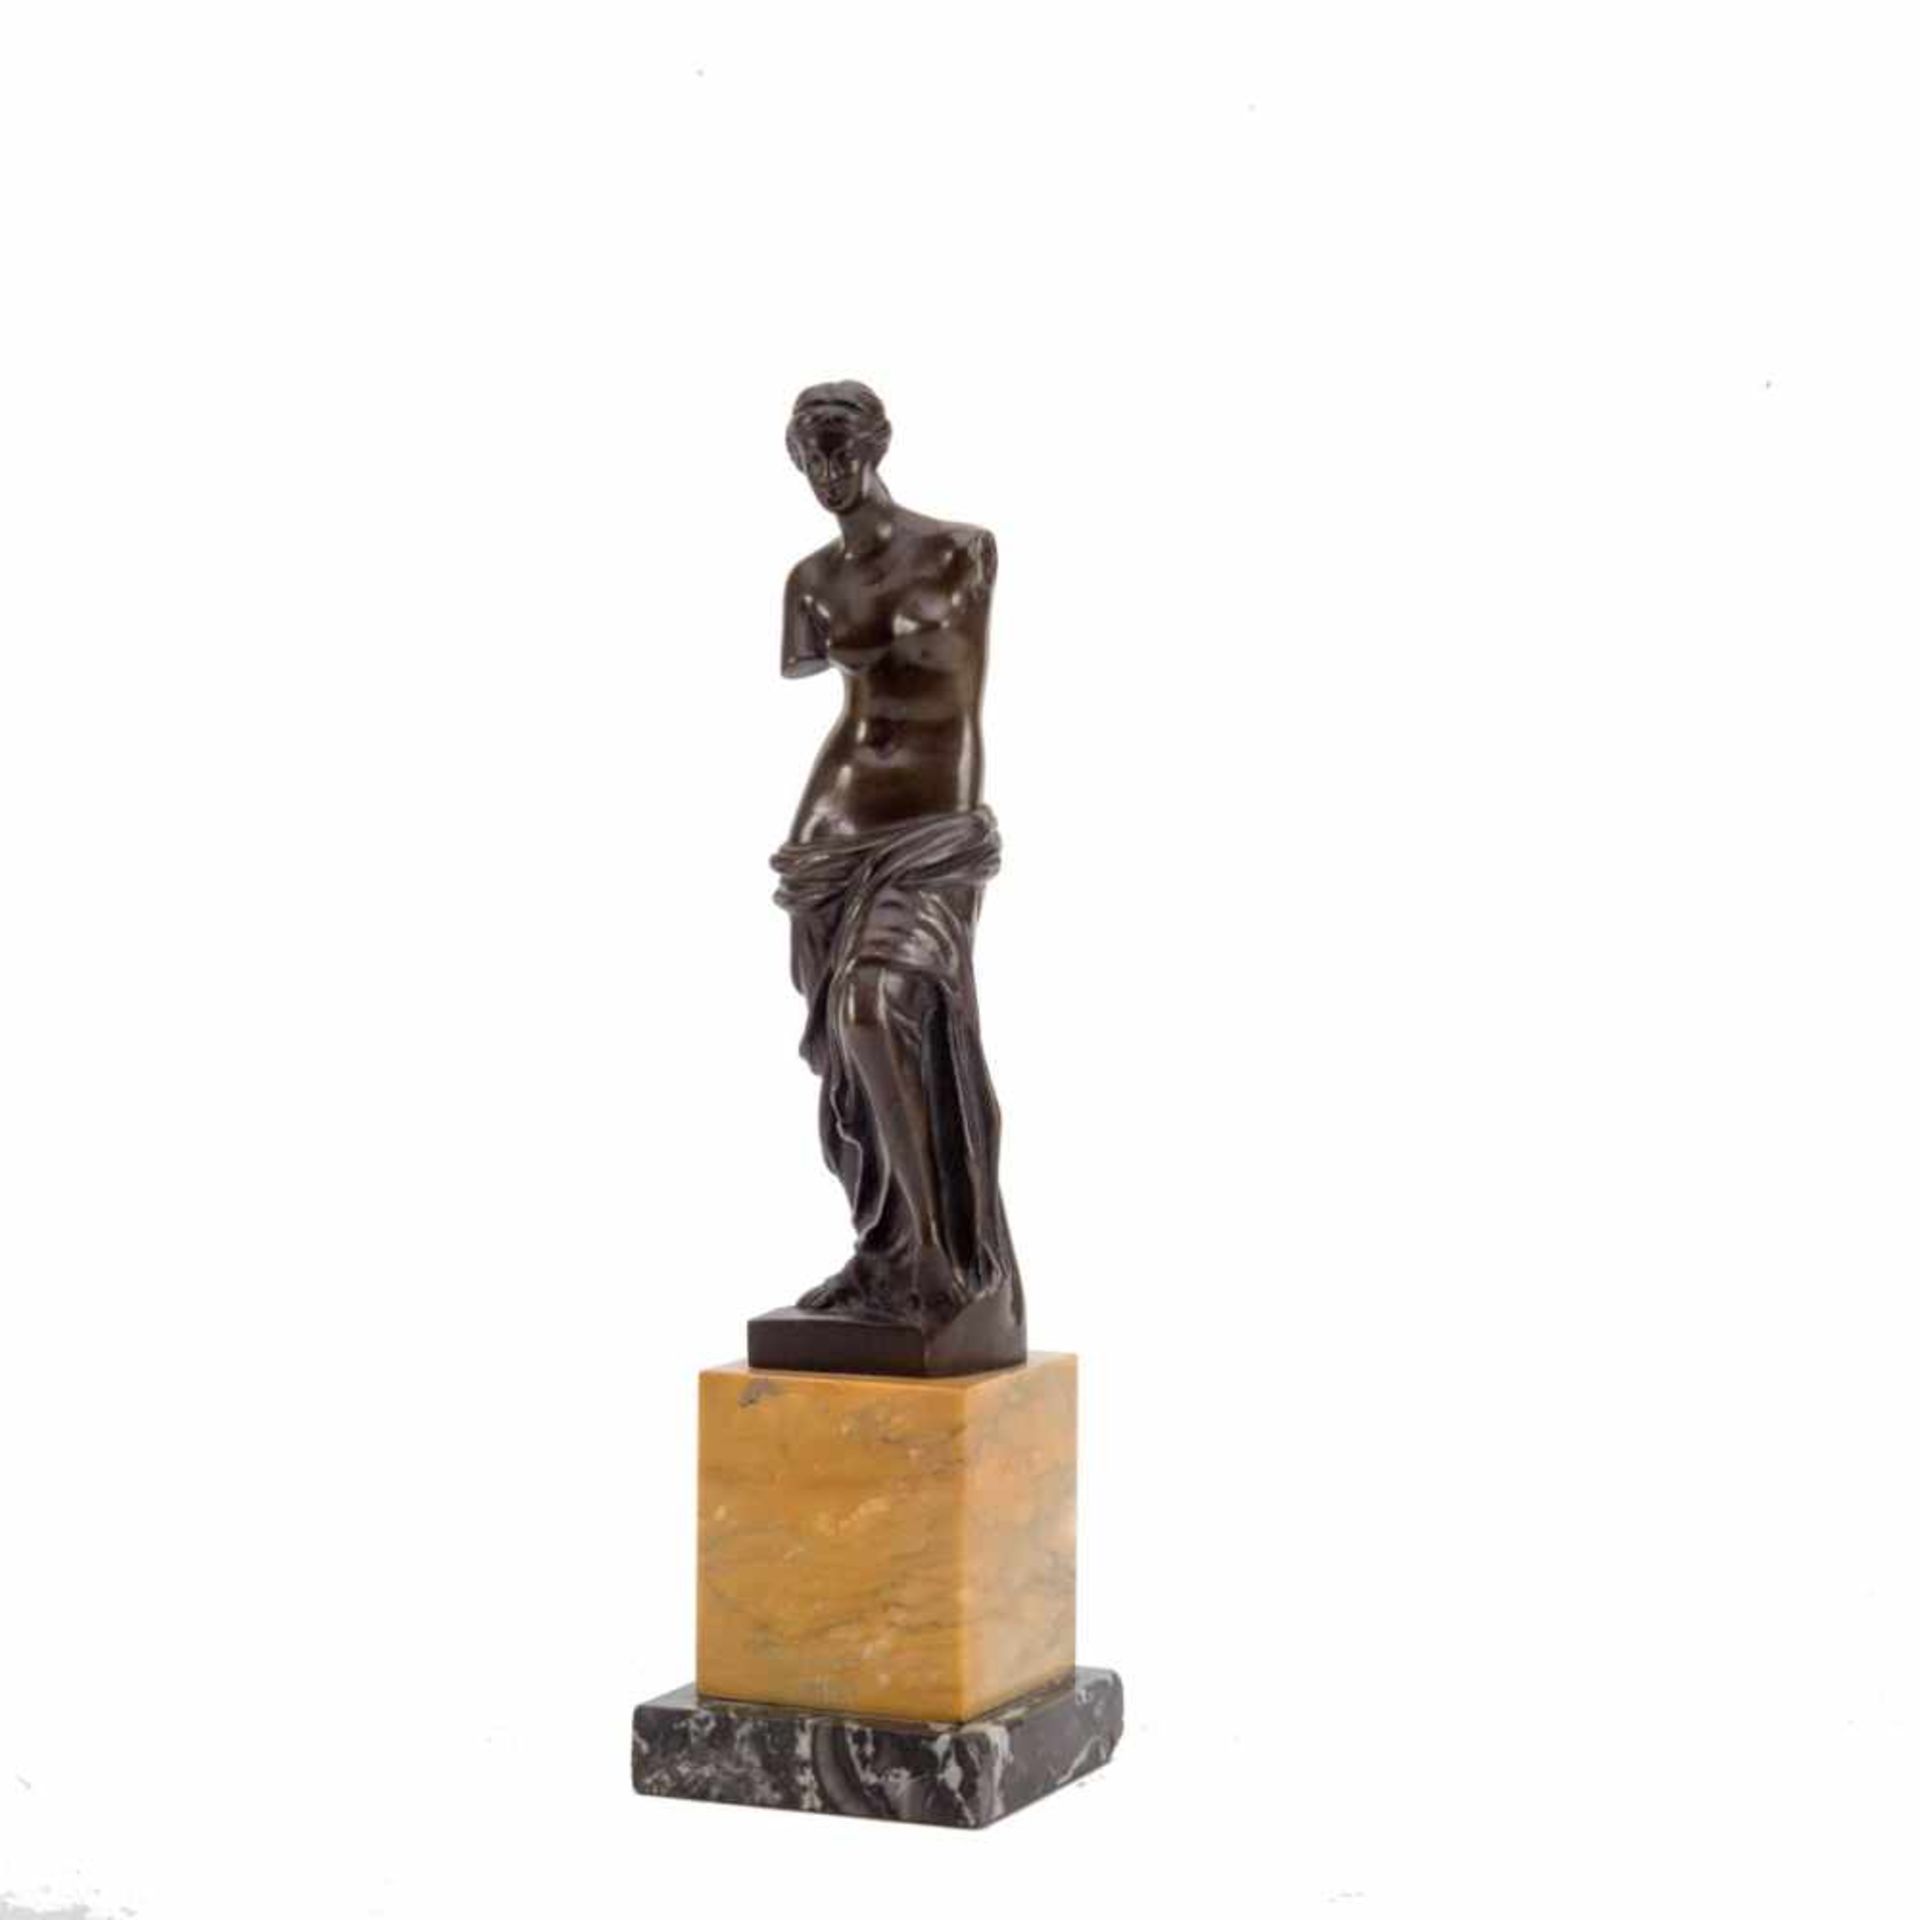 Miron Bildhauer um 1900. Bronze dunkel patiniert. Auf quadratischem Marmorsockel mit